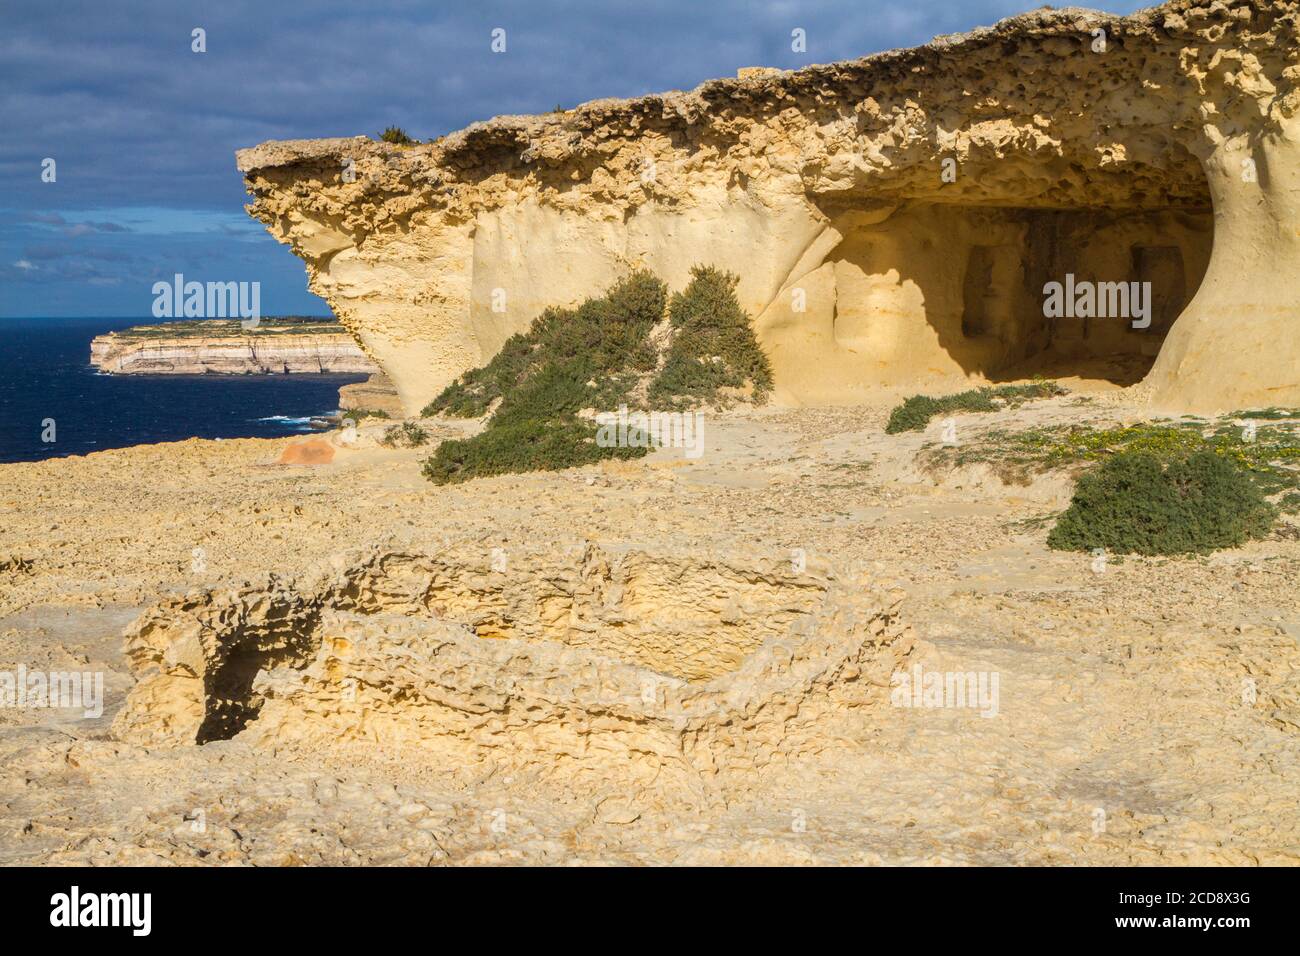 RAS il-Wardija (Punischer Tempel von Wardija) ein punisch-römisches Heiligtum, das in Kalksteinklippen auf der Insel Gozo, Malta, gehauen wurde Stockfoto